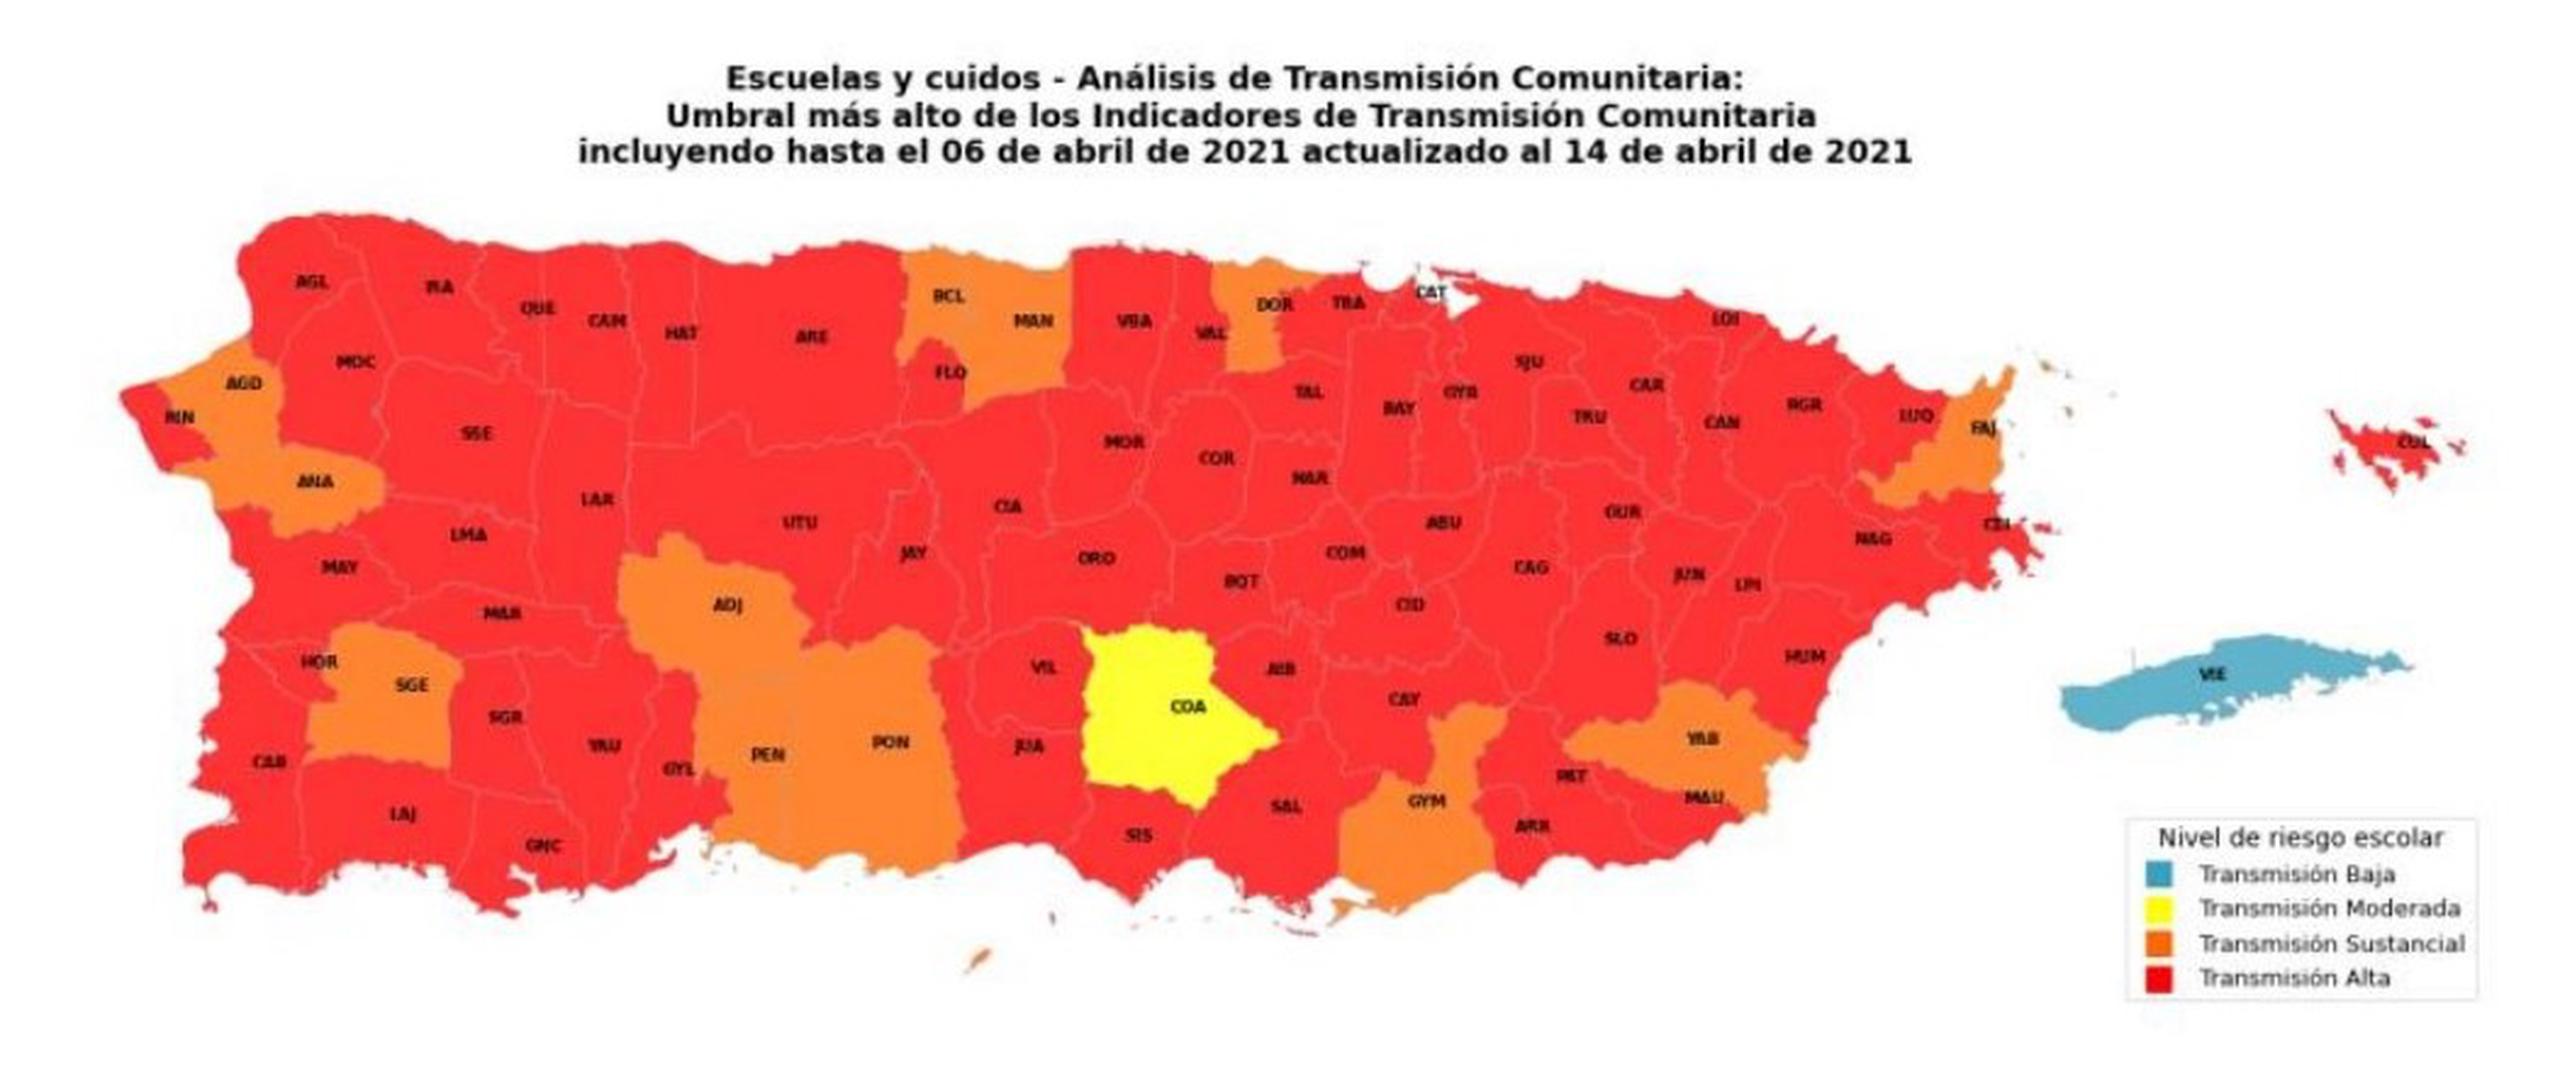 El informe semanal de Salud presenta 64 municipios con una transmisión alta de COVID-19.